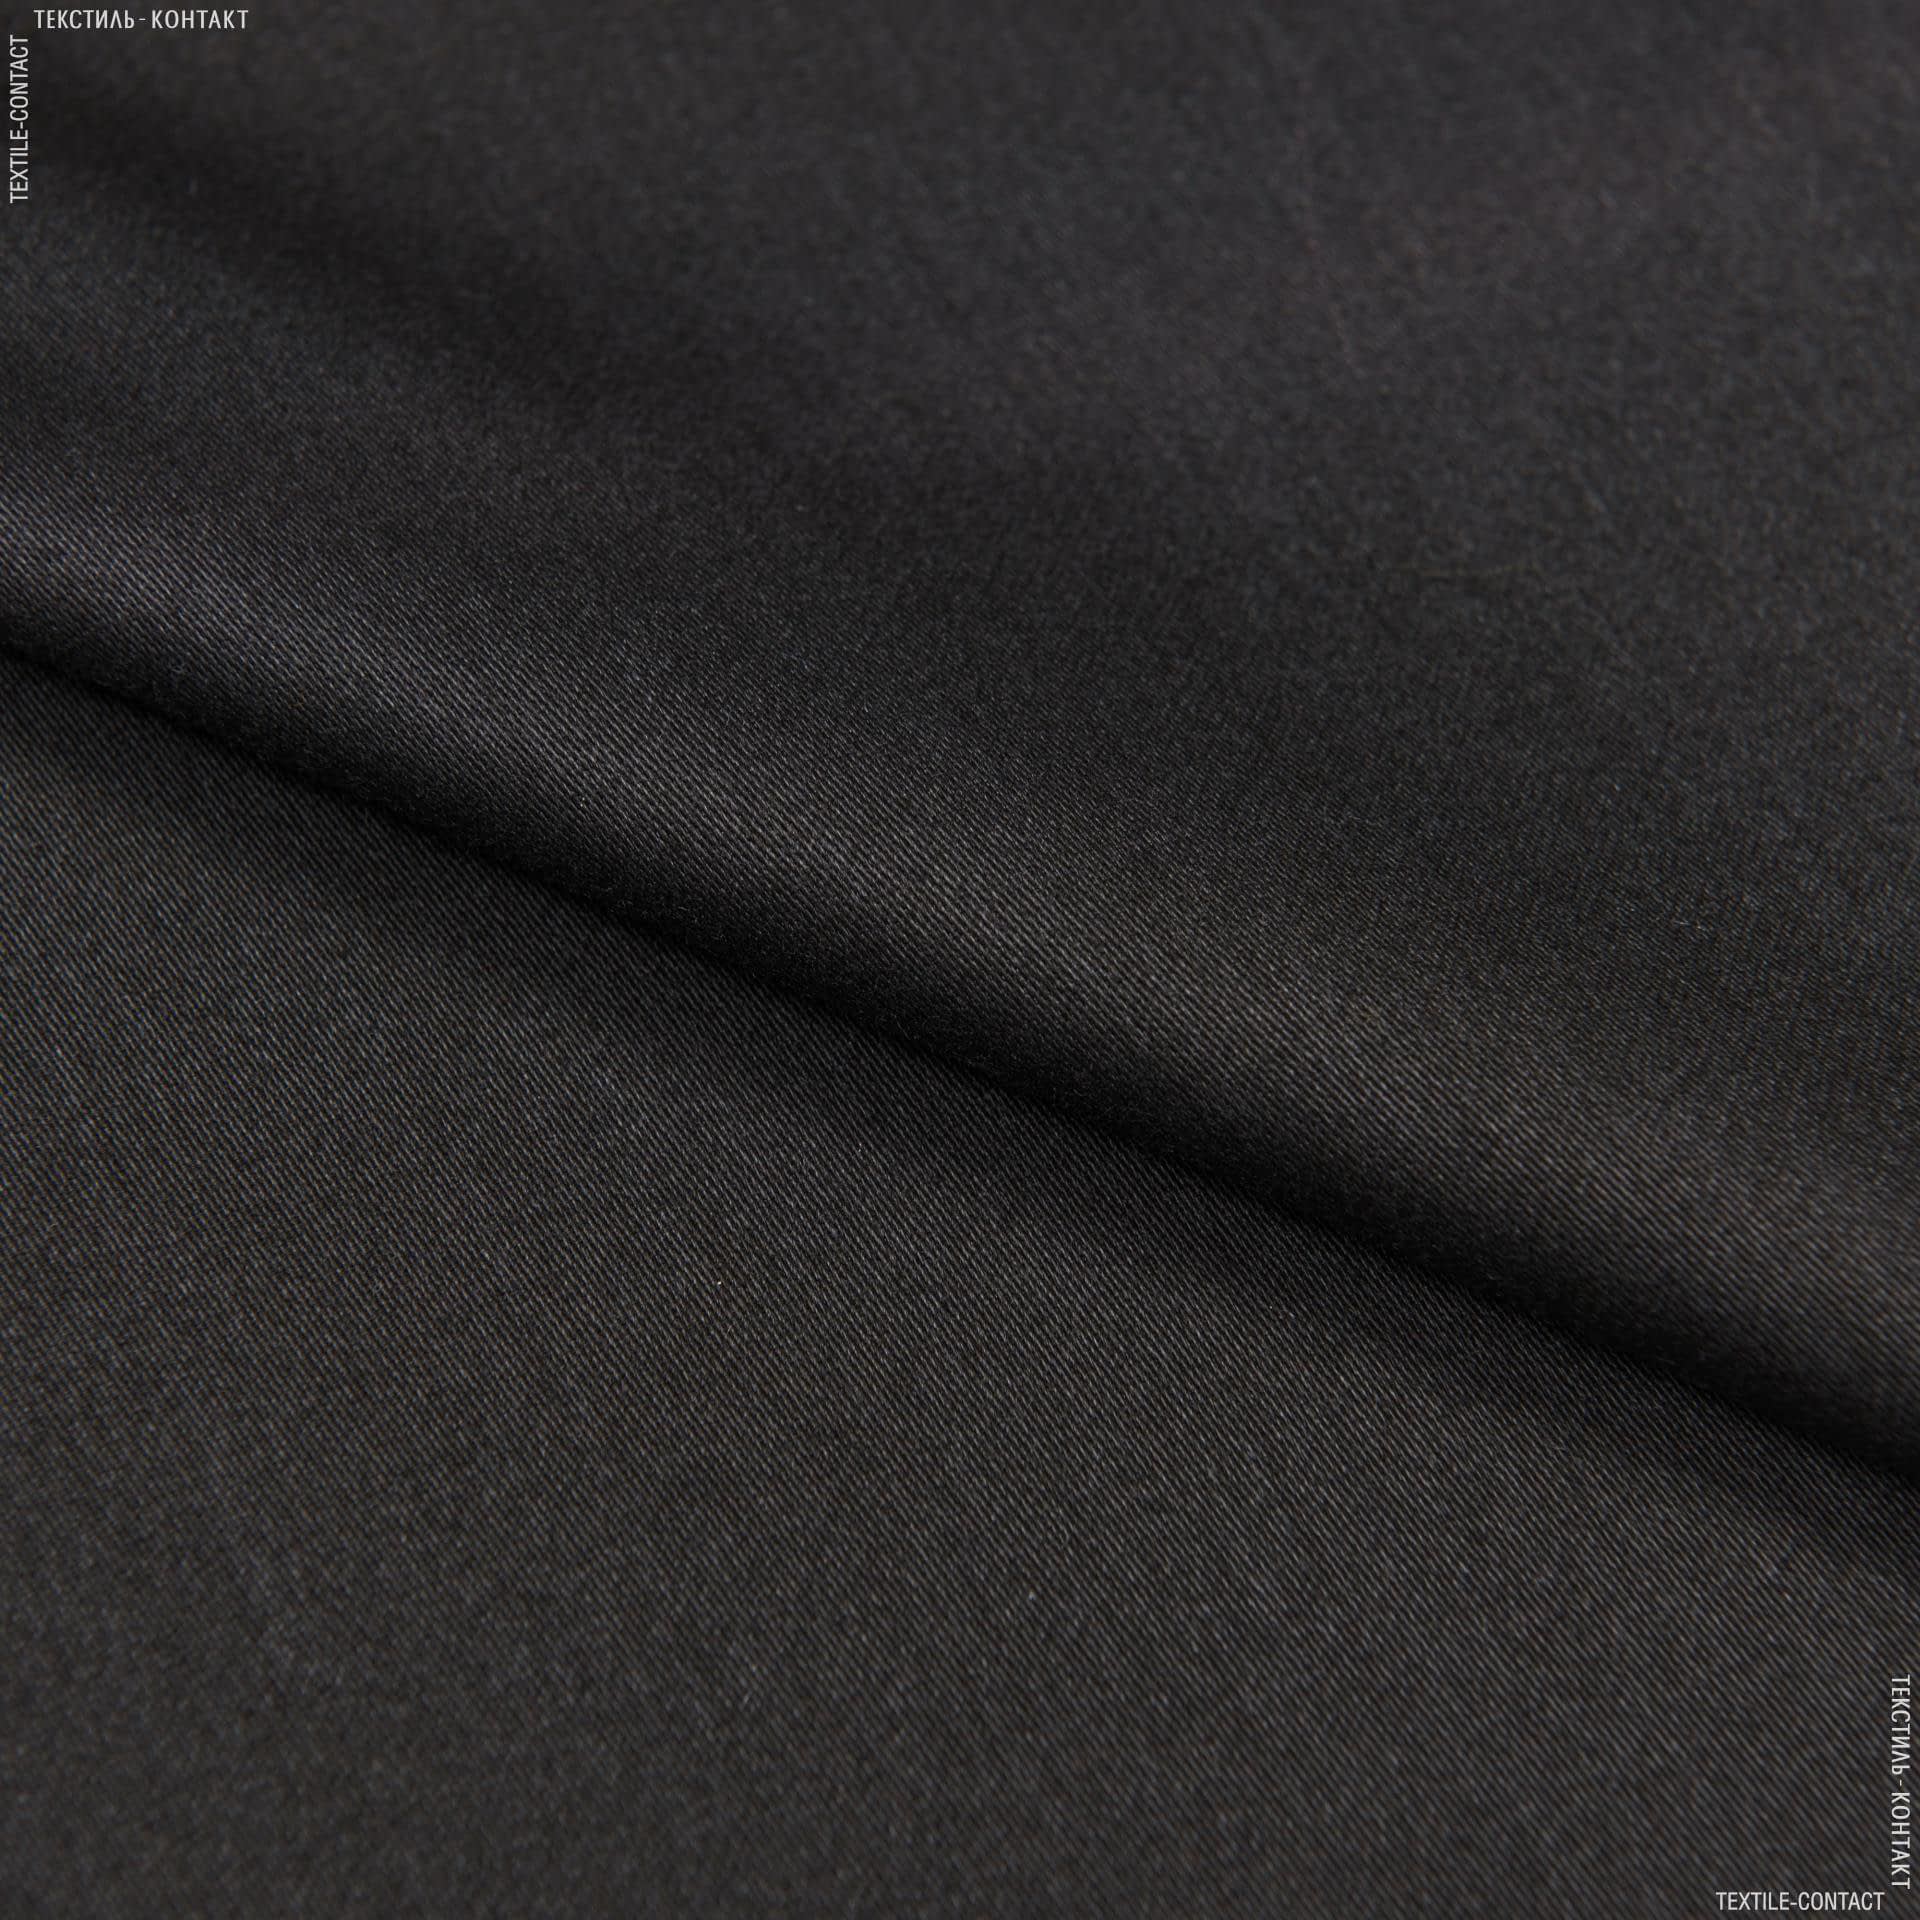 Тканини портьєрні тканини - Декоративний сатин Чікаго/CHICAGO чорний